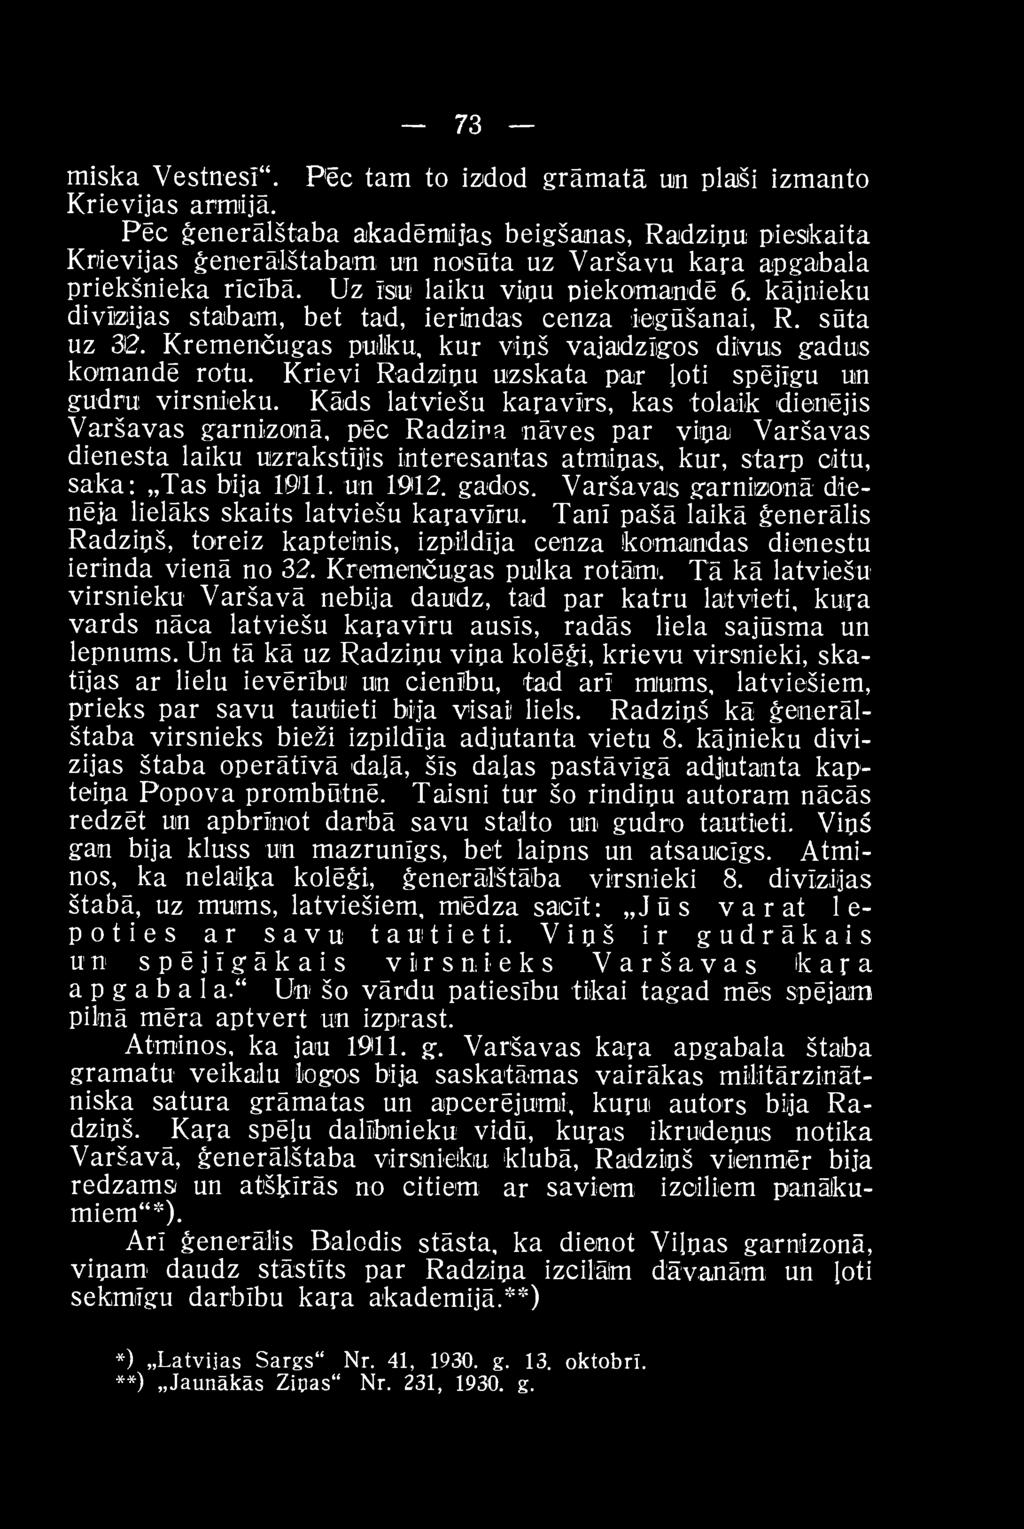 Kāds latviešu karavīrs, kas tolaik dienējis Varšavas garnizonā, pēc Radziņa nāves par viņai Varšavas dienesta laiku uzrakstījis interesantas atmiņas, kur, starp citu, saka: Tas bija 1011. un 1912.